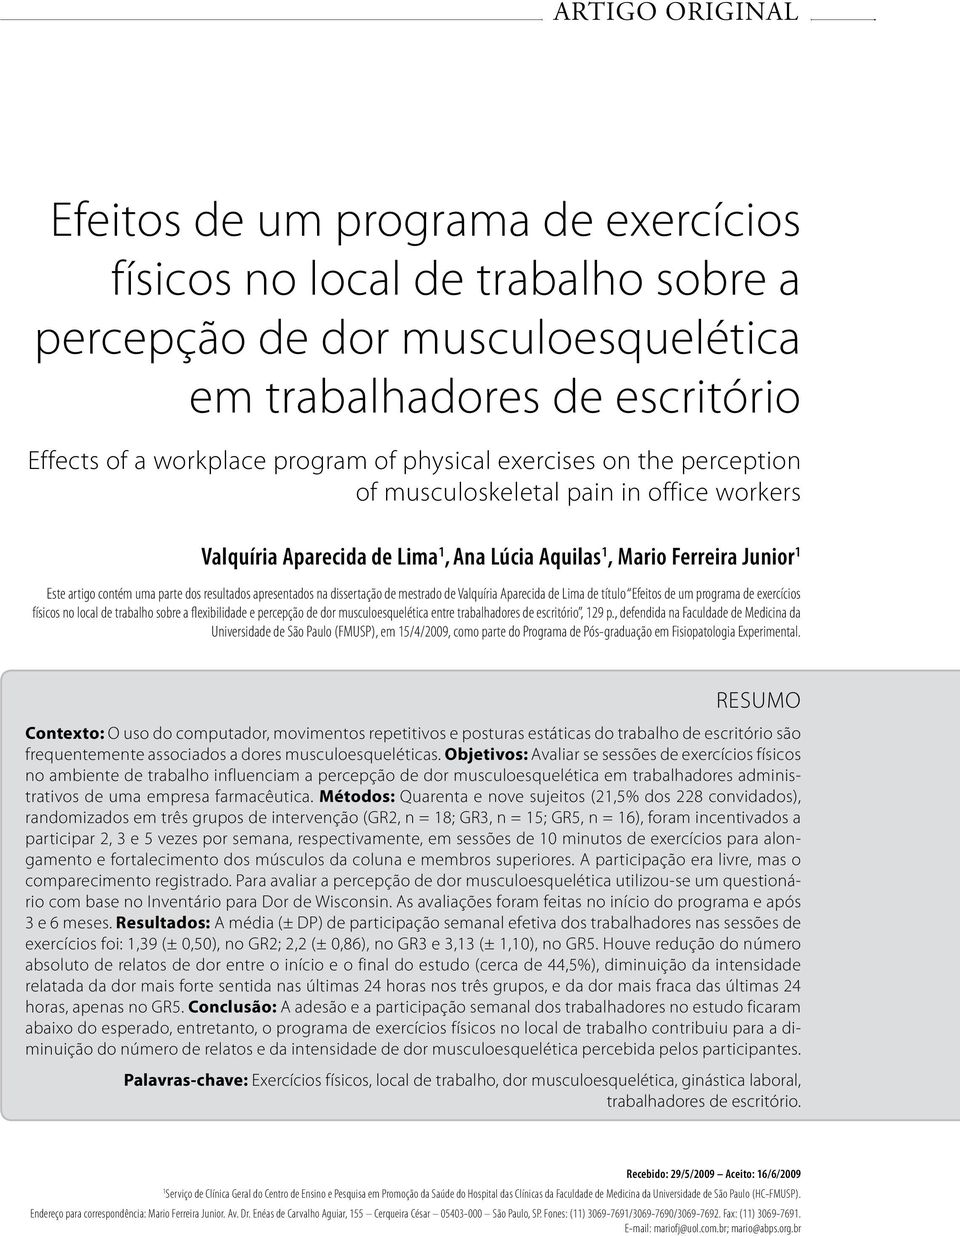 apresentados na dissertação de mestrado de Valquíria Aparecida de Lima de título Efeitos de um programa de exercícios físicos no local de trabalho sobre a flexibilidade e percepção de dor